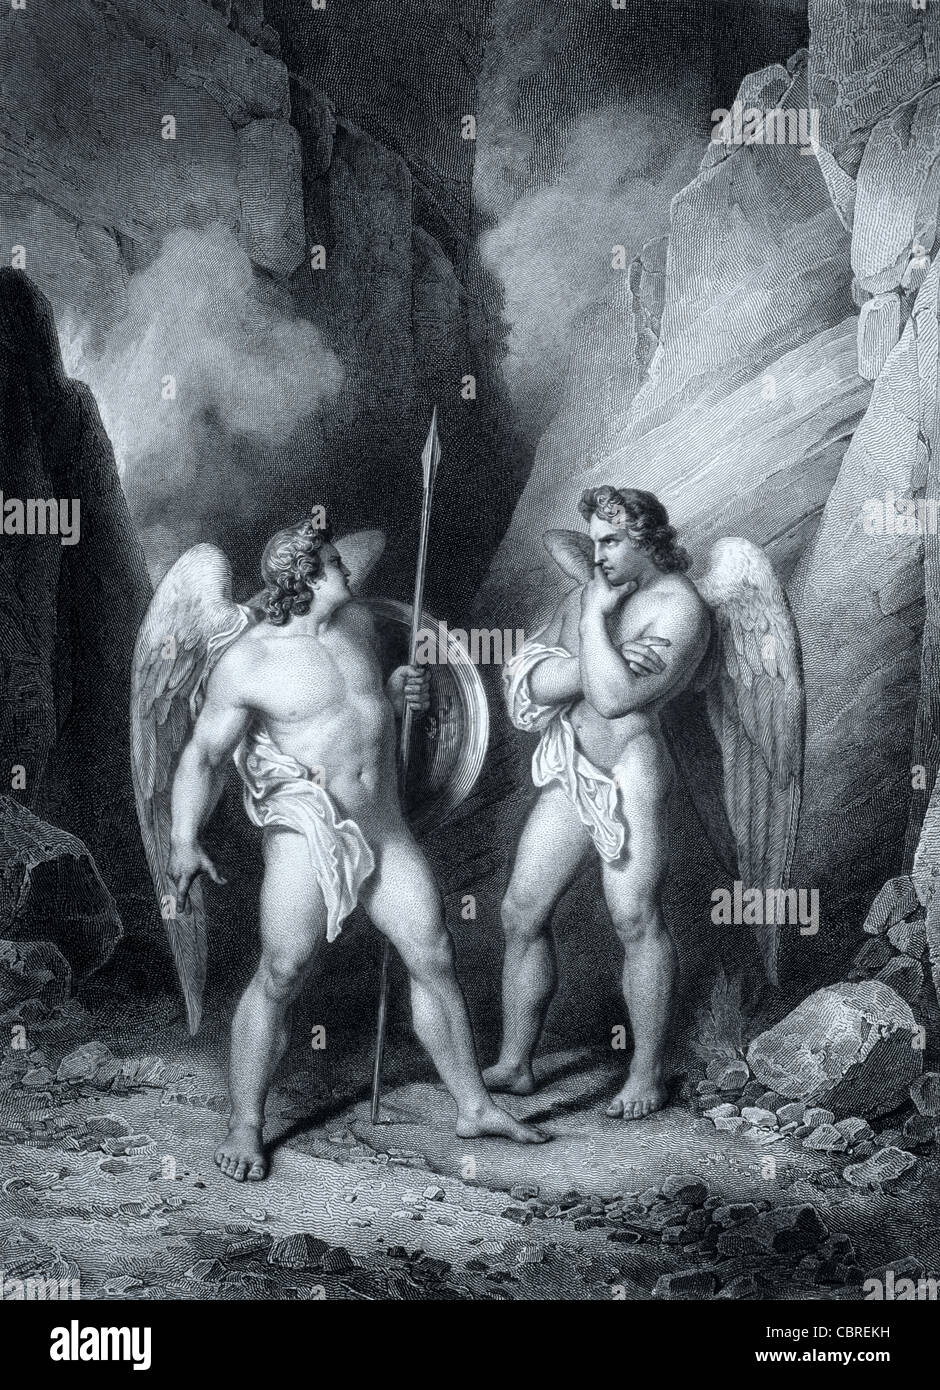 Der Teufel oder Satan & Beelzebub oder Beelzebub "der Prinz der Teufel". John Miltons Paradise Lost. C19th Gravur von Gustave Doré Stockfoto